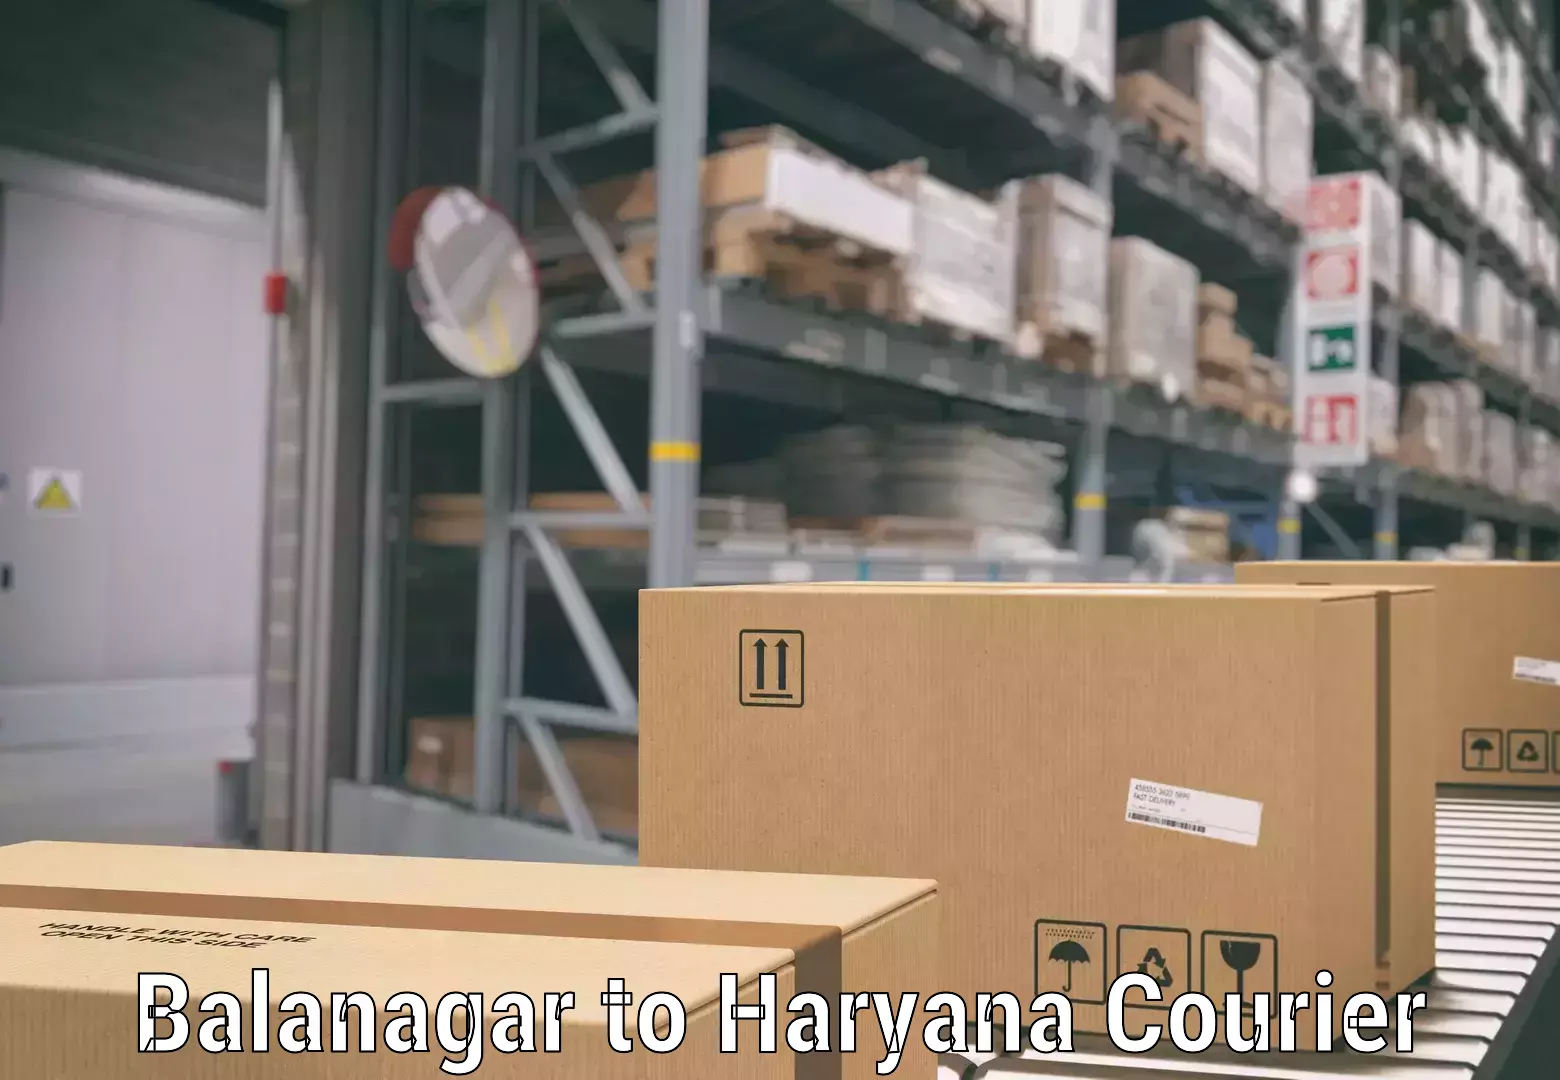 Baggage transport network Balanagar to Chaudhary Charan Singh Haryana Agricultural University Hisar